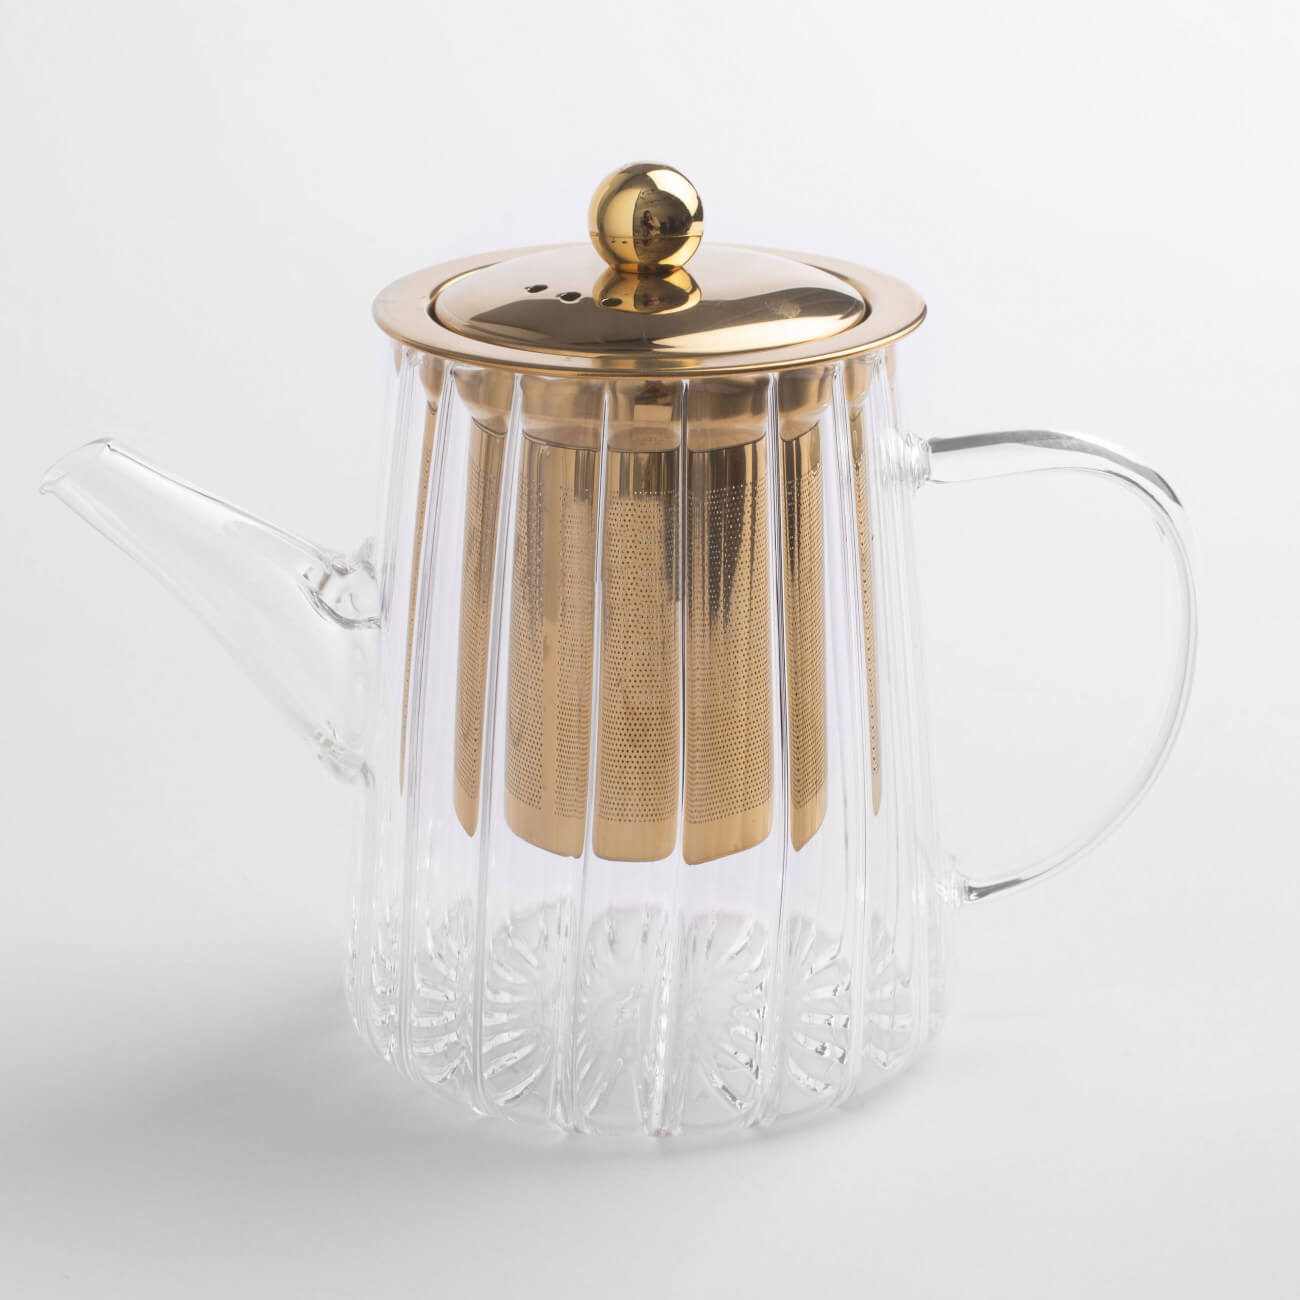 Чайник заварочный, 600 мл, стекло Б/сталь, золотистый, Camellia gold чайник заварочный с чашками smart solutions 1 2л